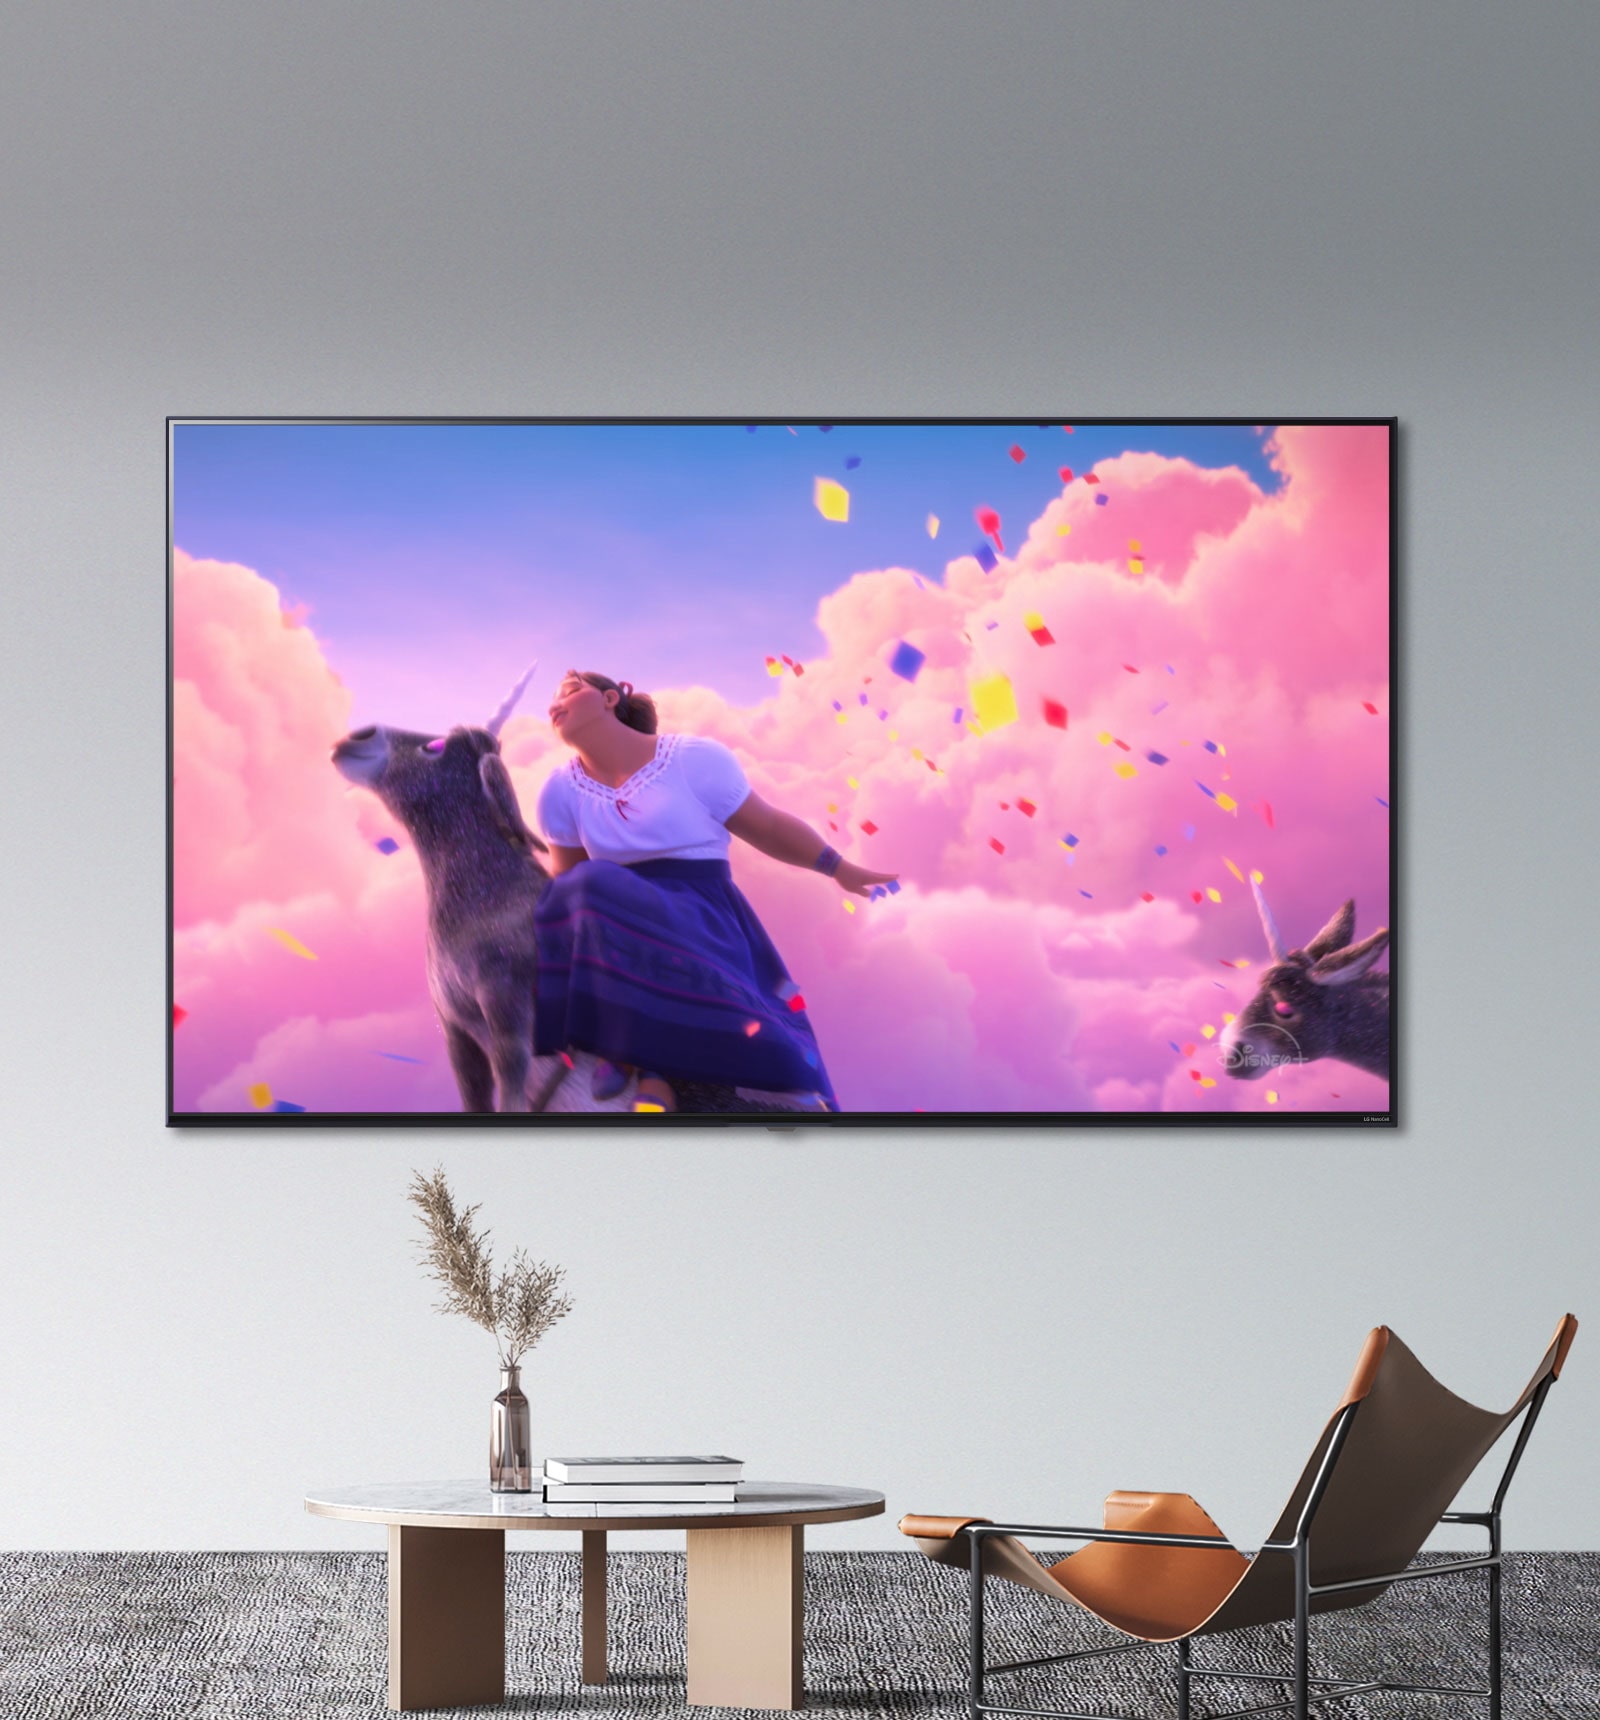 Zábery z animovaného filmu Disney „Encanto“ zobrazujú jasné a živé farby na televízore LG NanoCell.